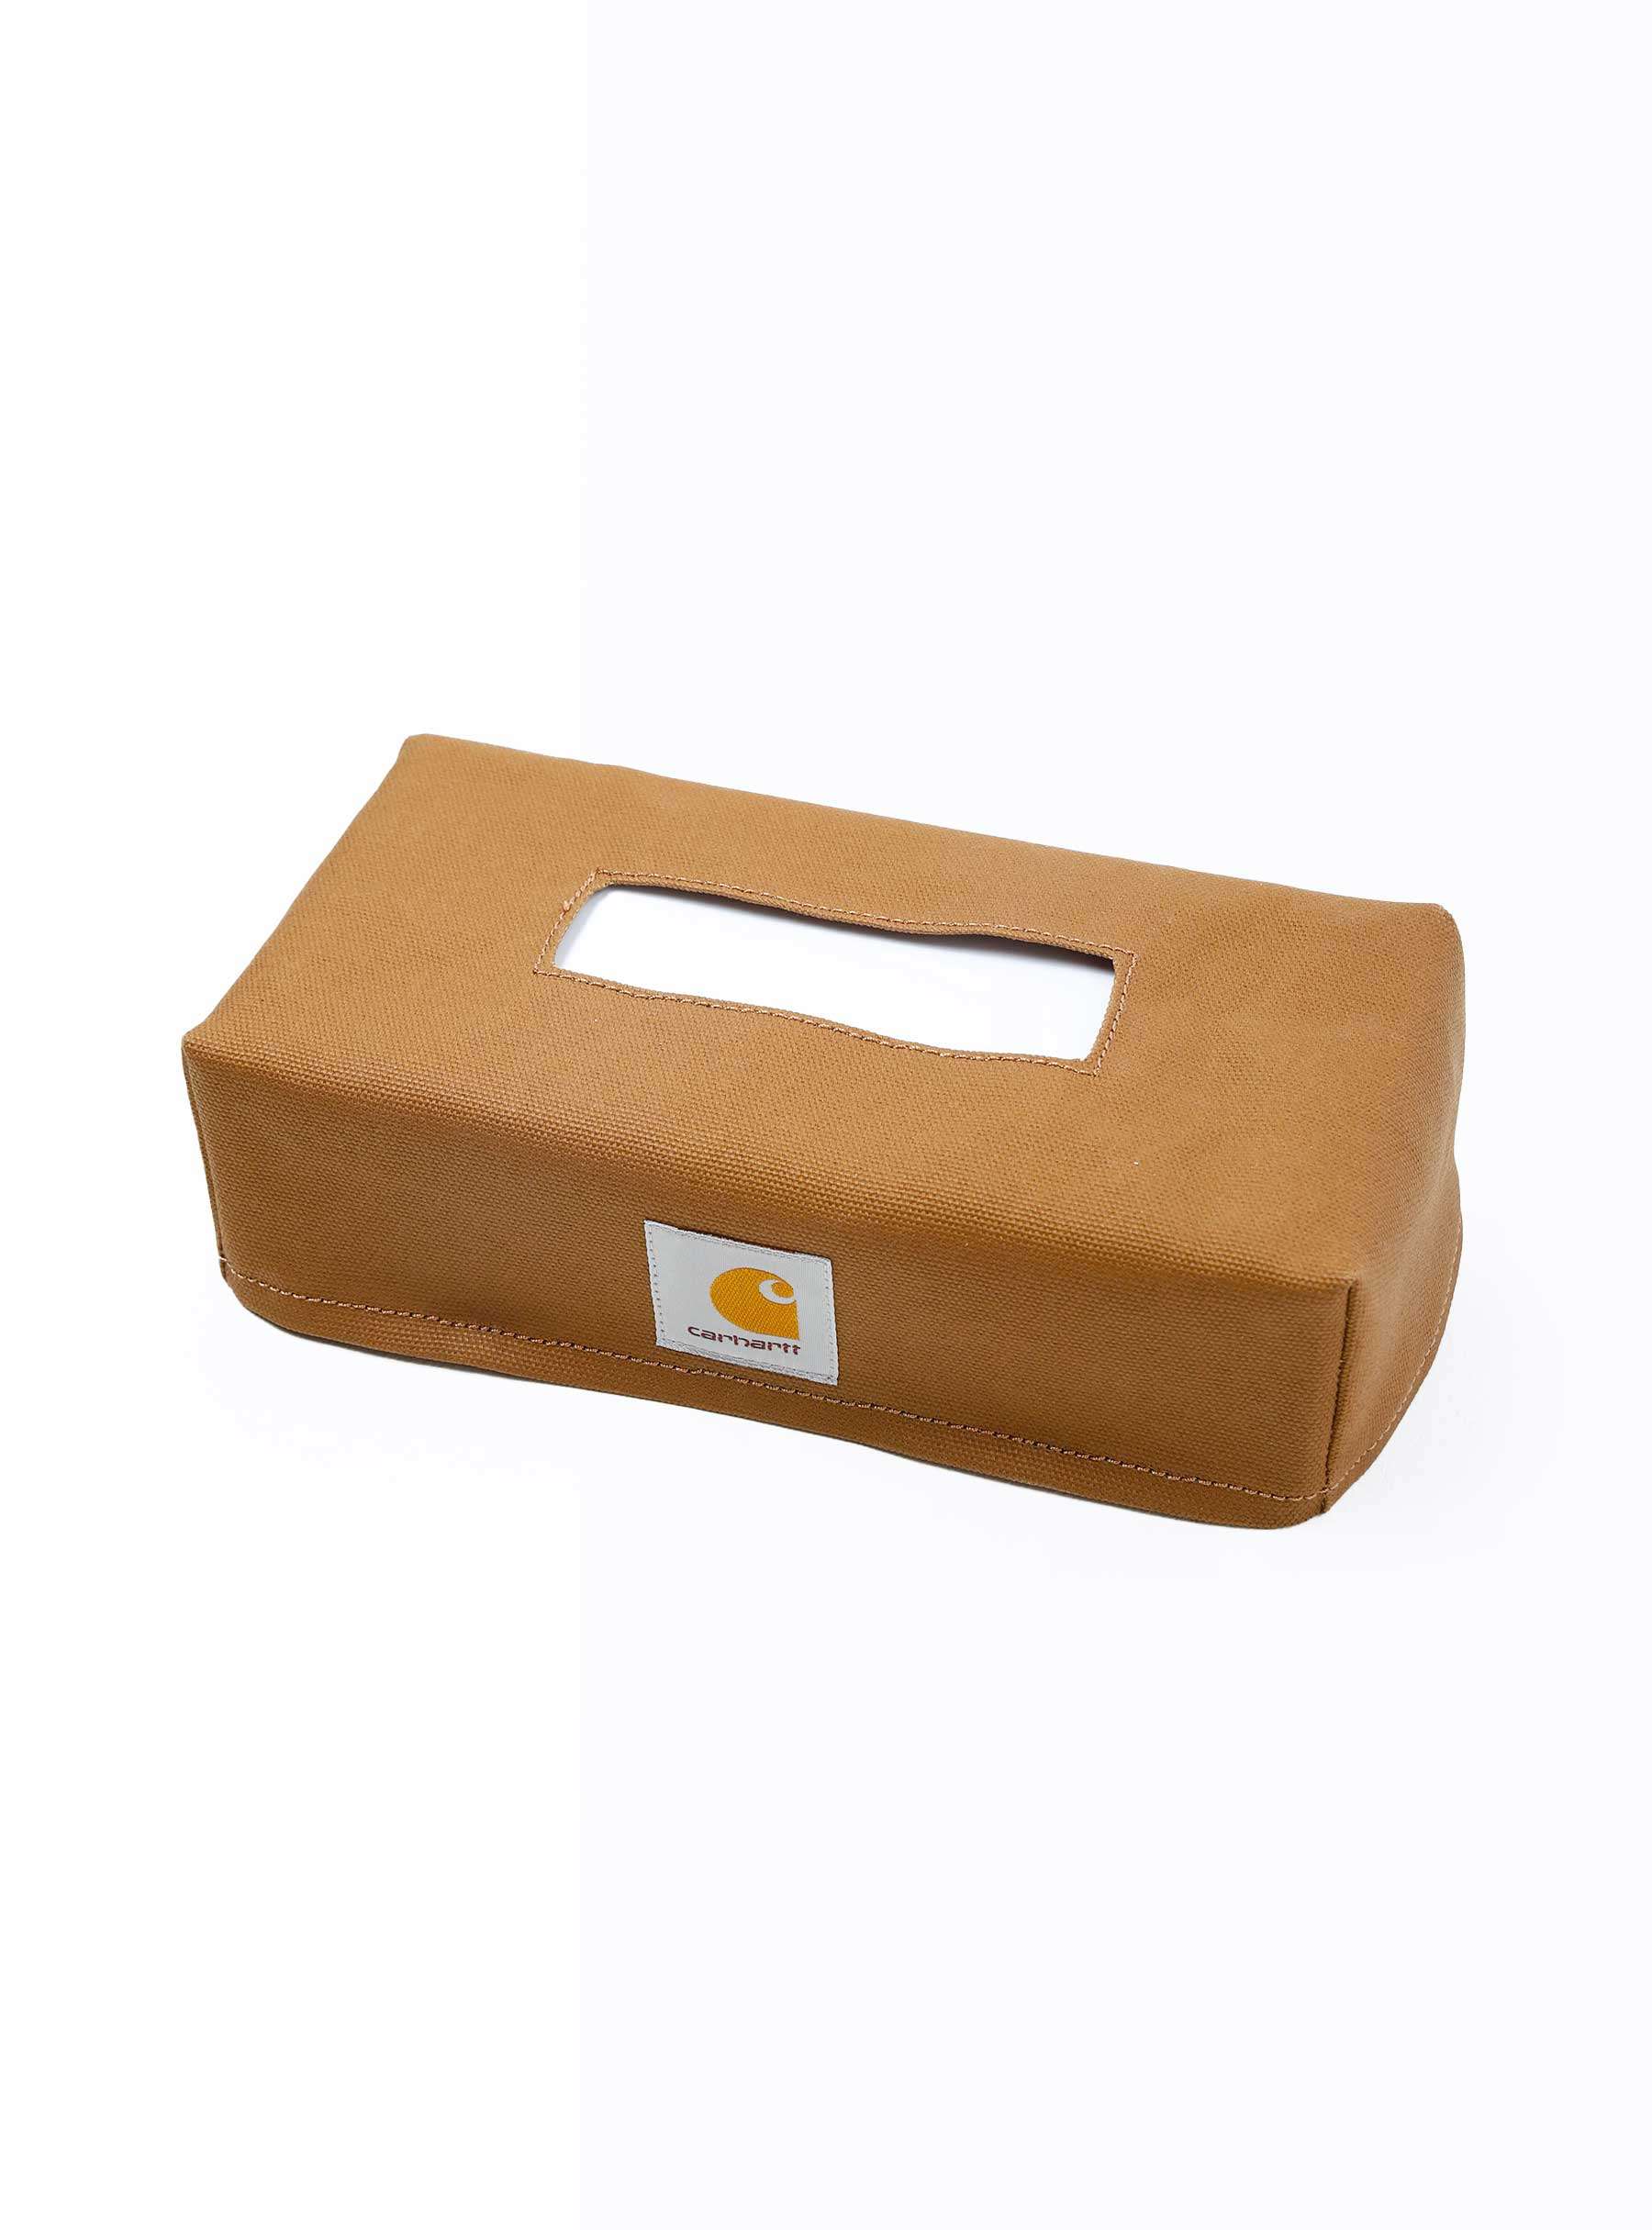 Tissue Box Cover Hamilton Brown I033287-HZXX